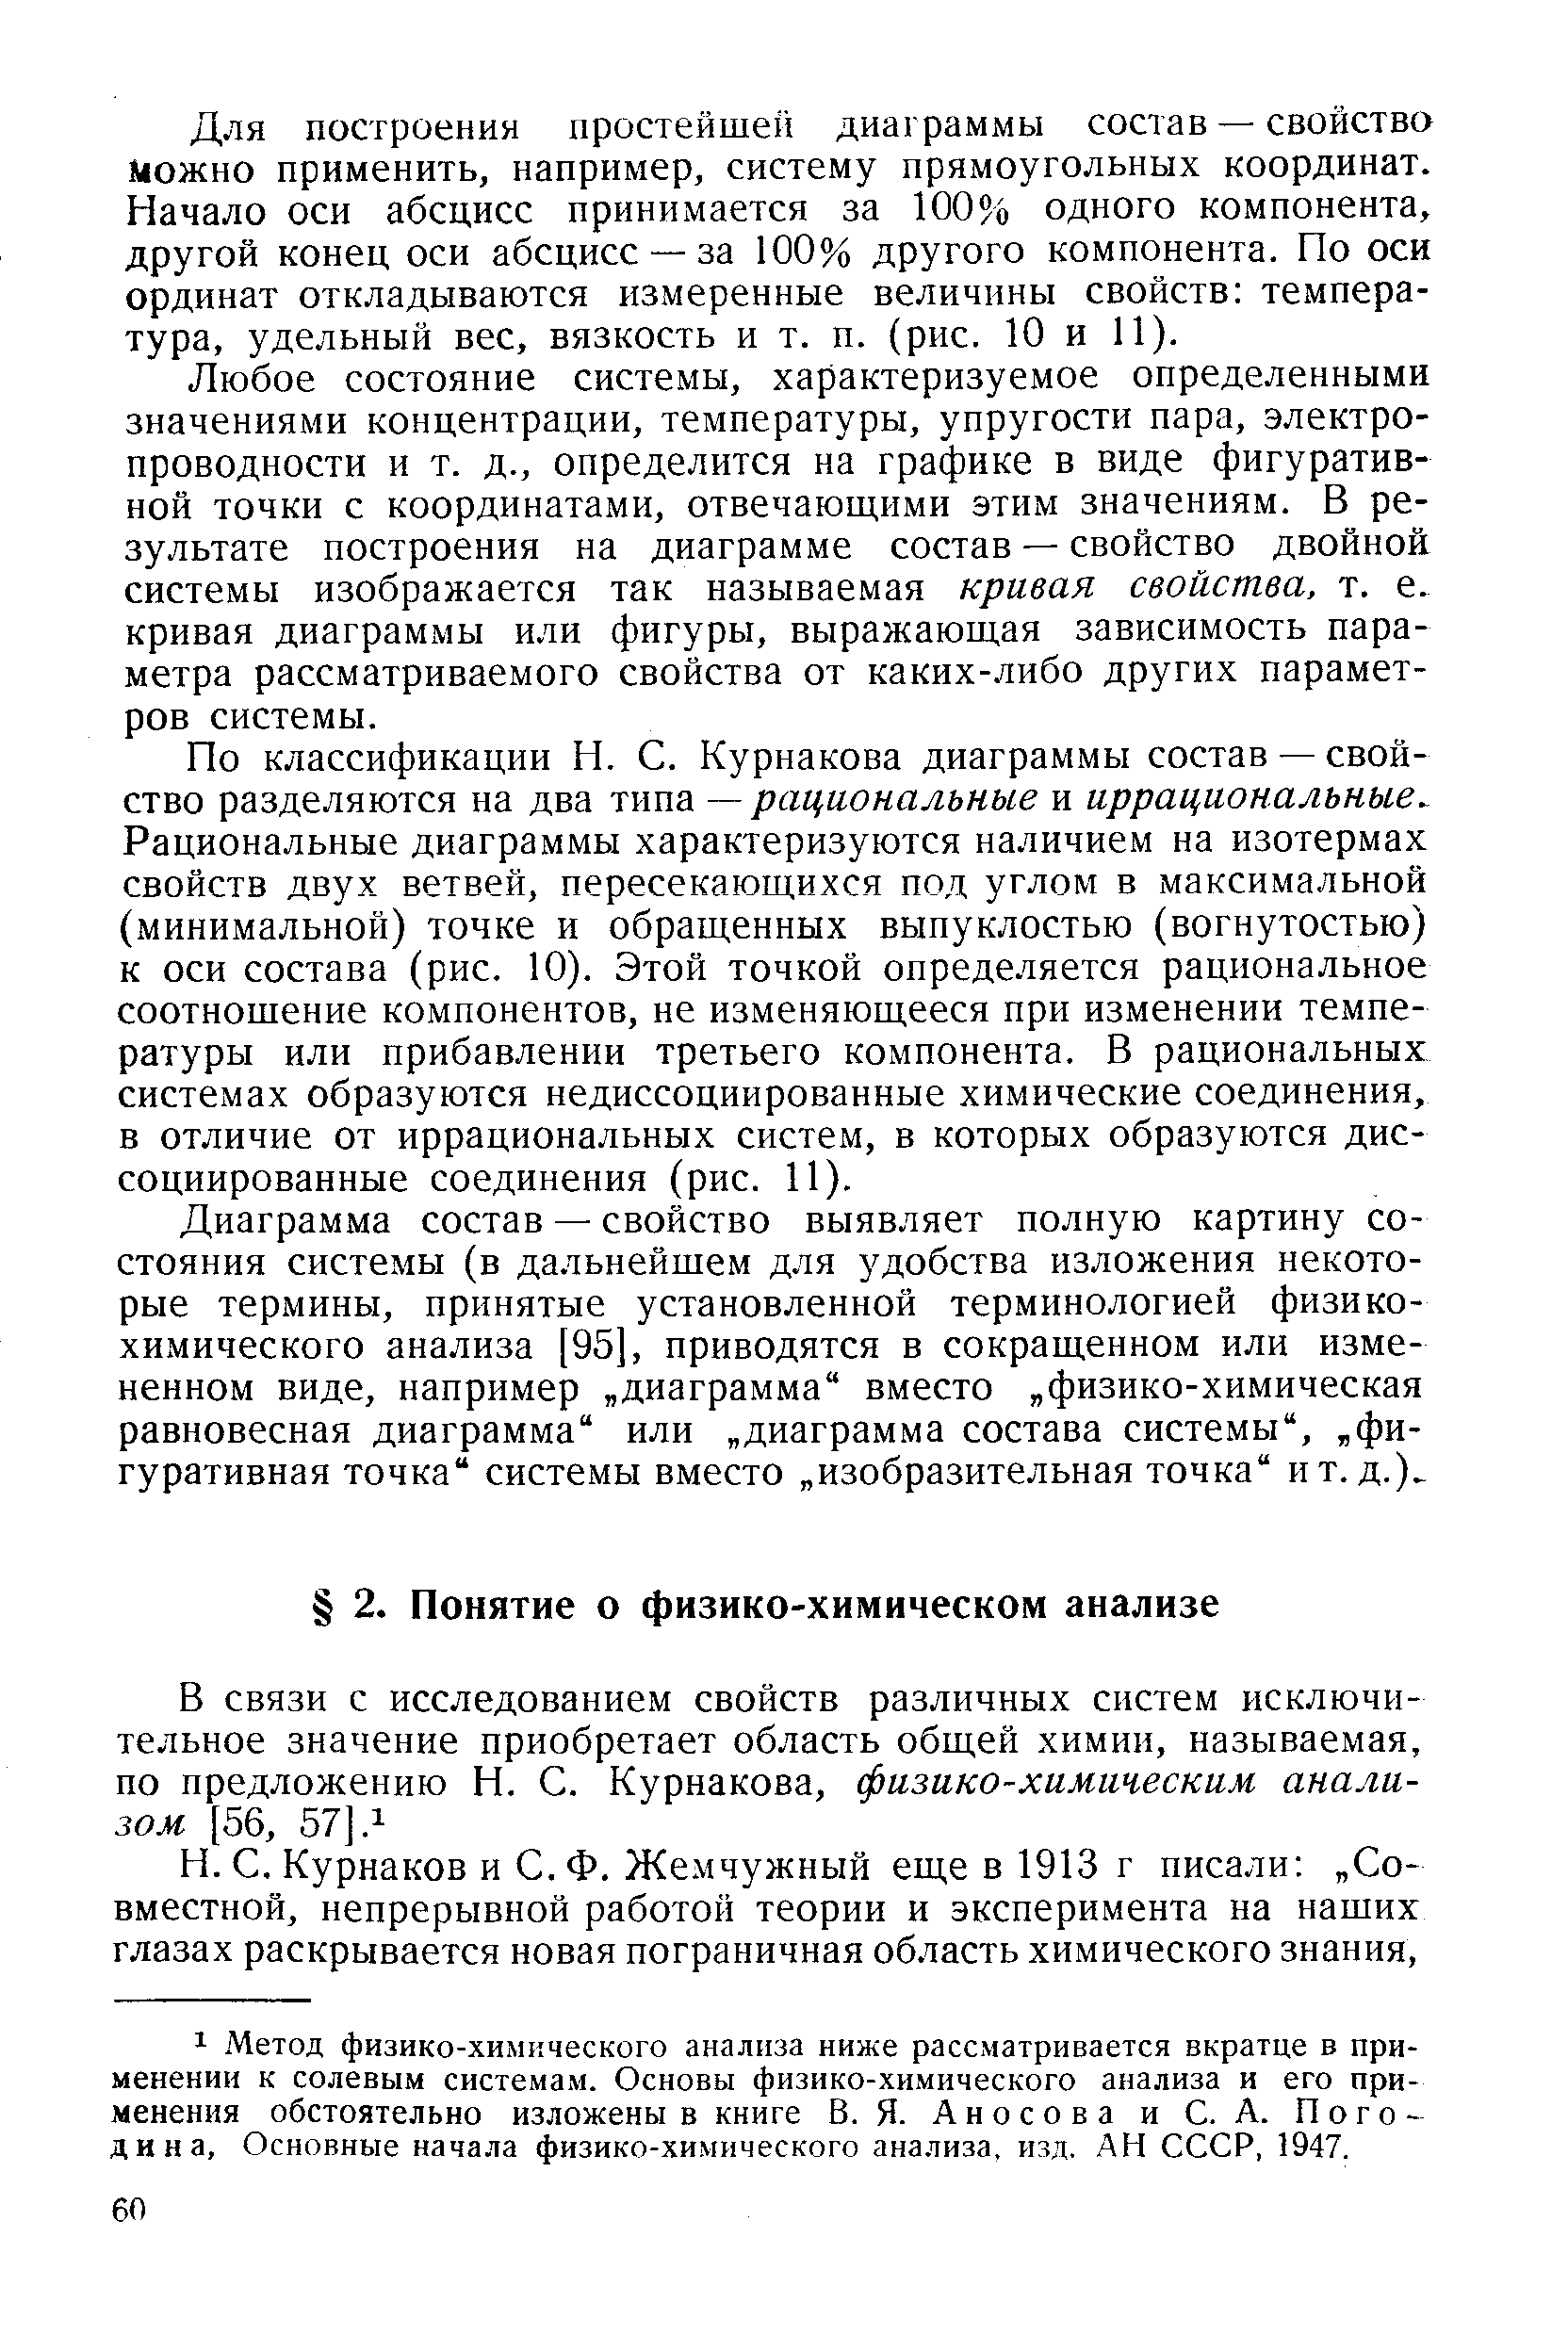 Курнаков и С. Ф. Жемчужный еще в 1913 г писали Совместной, непрерывной работой теории и эксперимента на наших глазах раскрывается новая пограничная область химического знания.